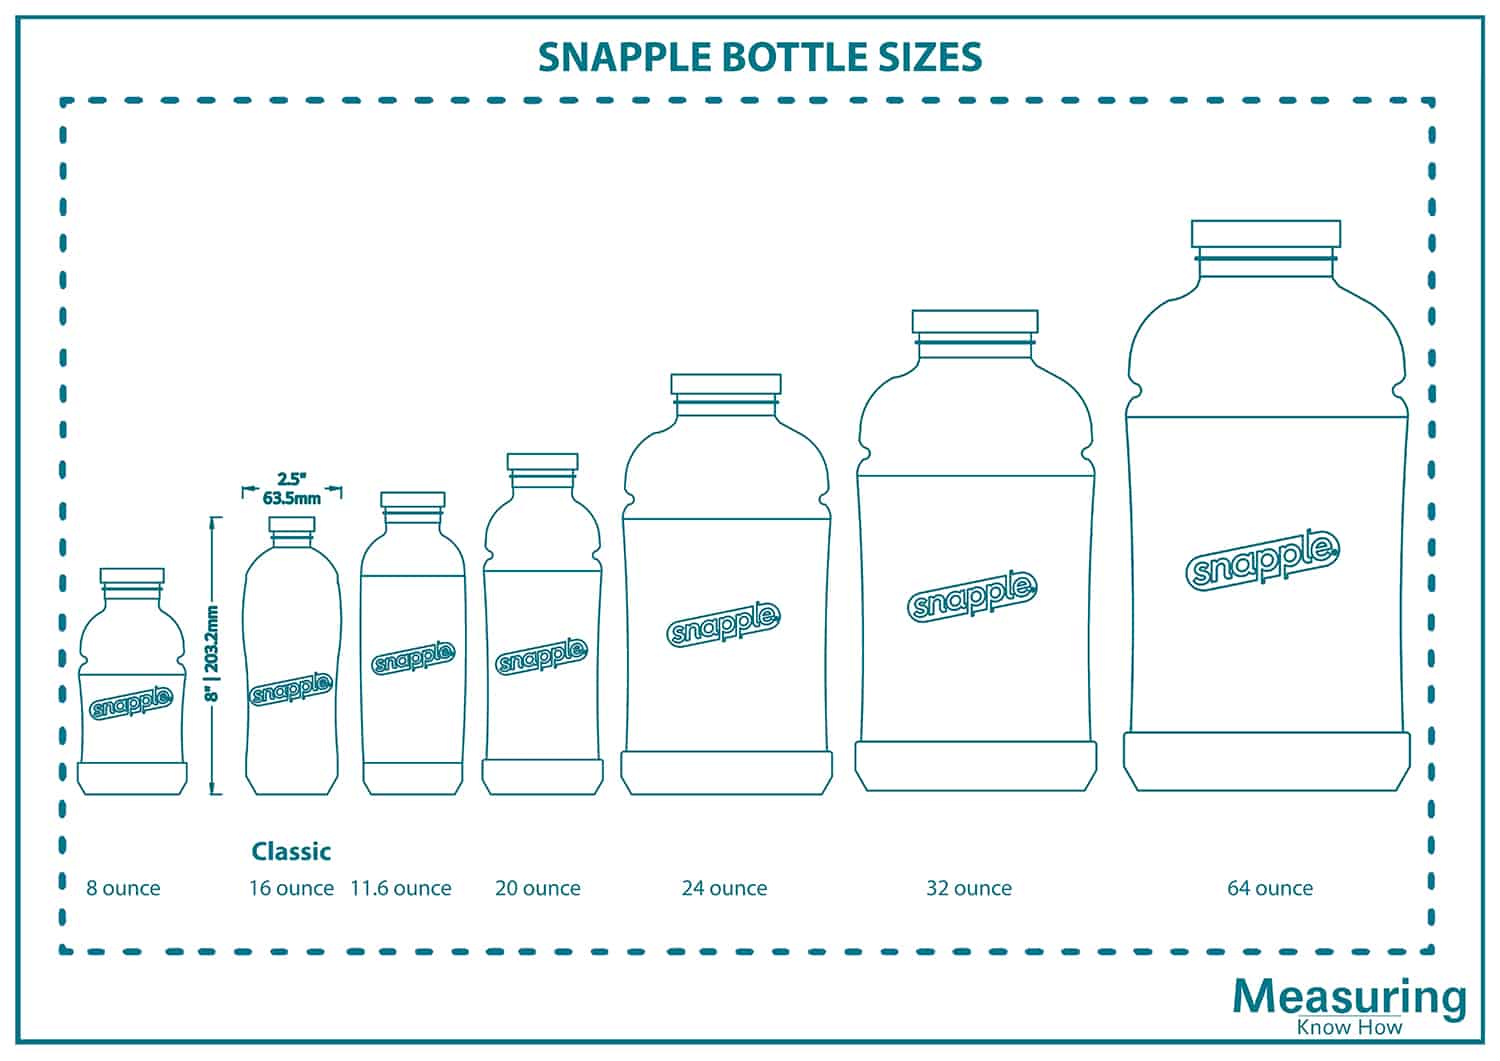 Snapple bottle sizes